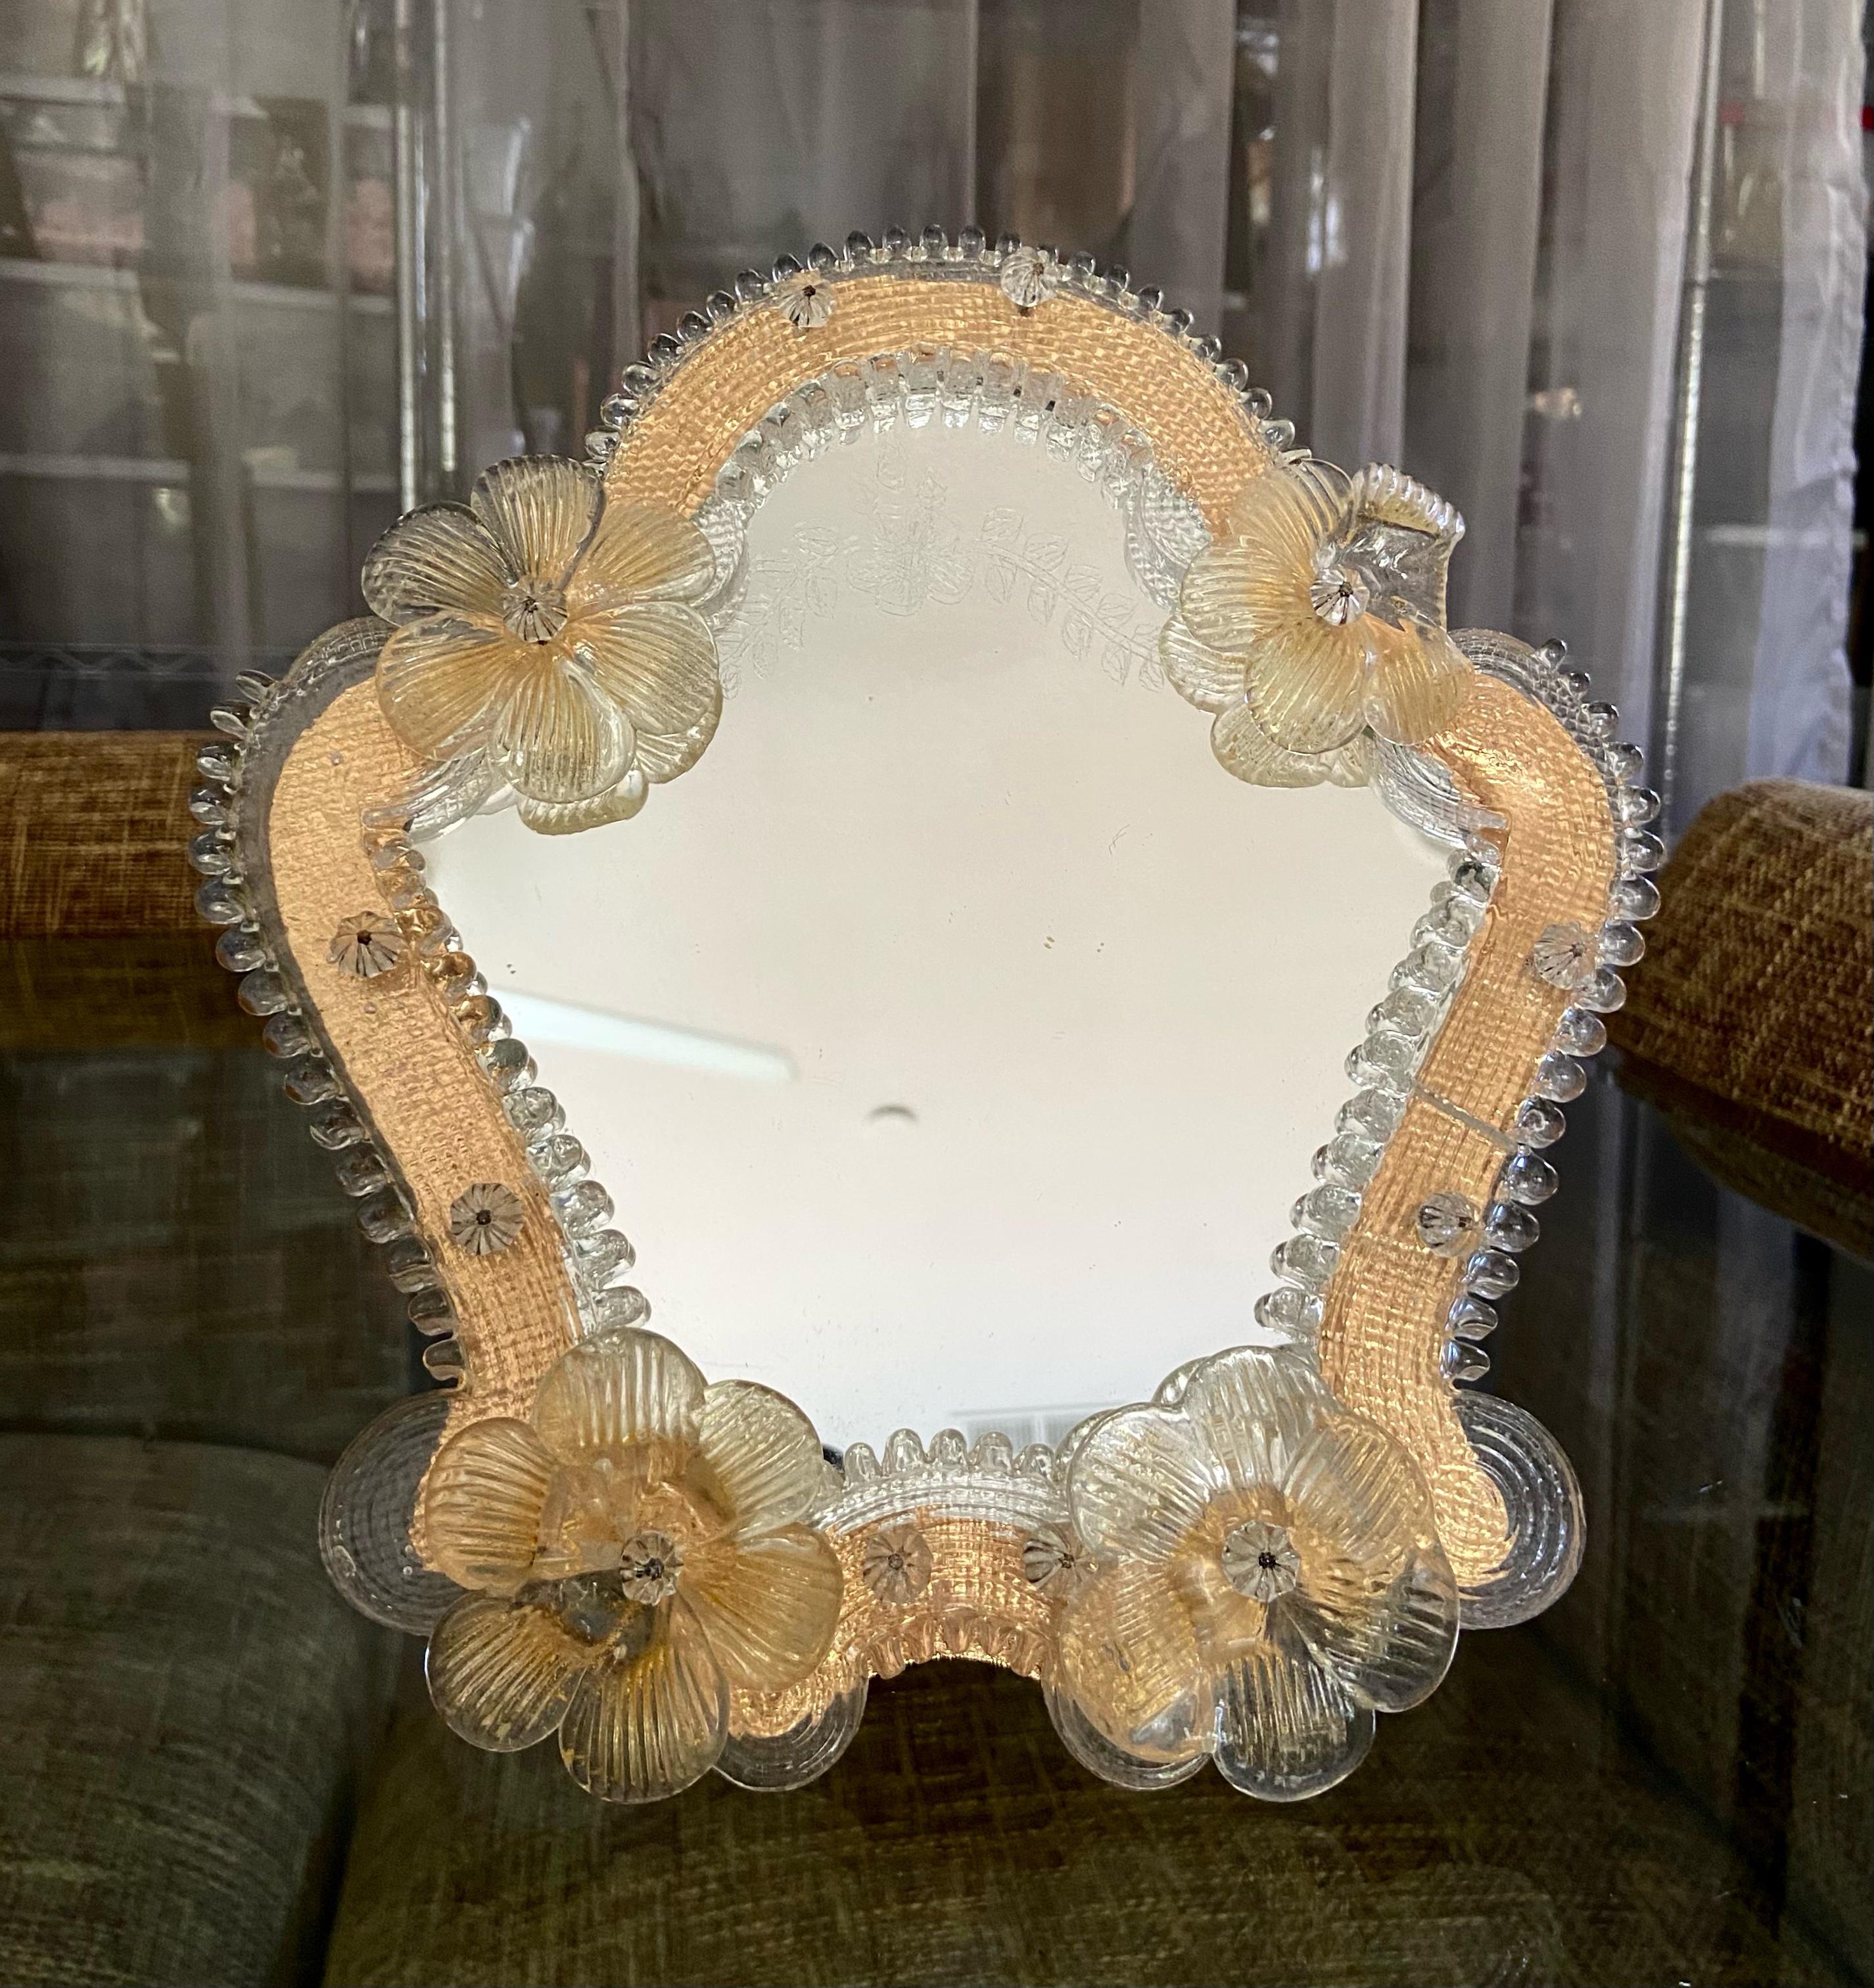 Kleinerer Muranospiegel mit klaren und goldenen Blumen und hellen bernsteinfarbenen Glasstücken, die den Spiegel umgeben. Das Spiegelglas hat eine dekorative Ätzung. Der Ständer und die Unterlage sind aus Holz. 
  